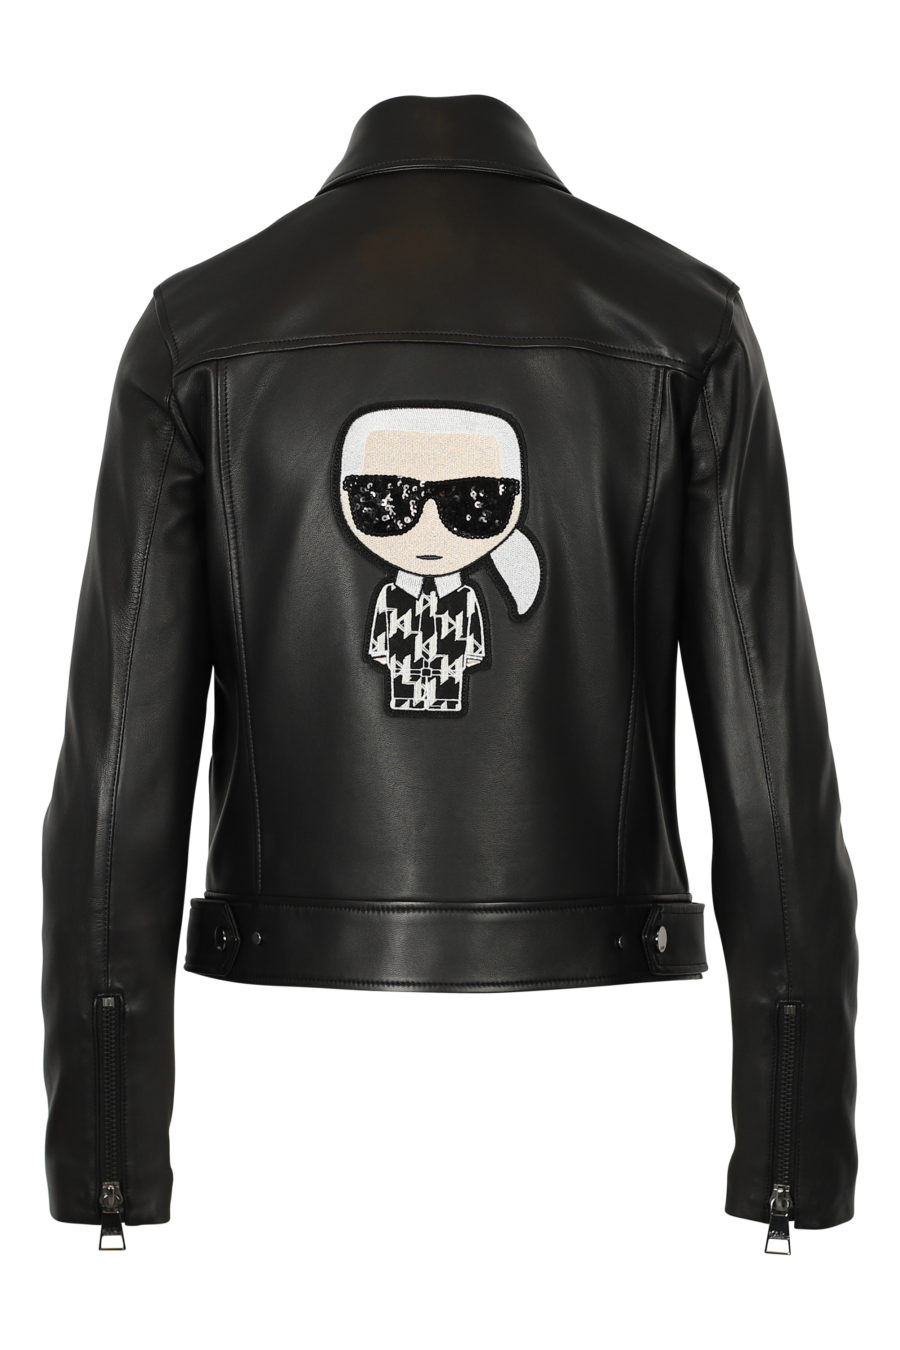 Black biker jacket with patterned back - IMG 3095